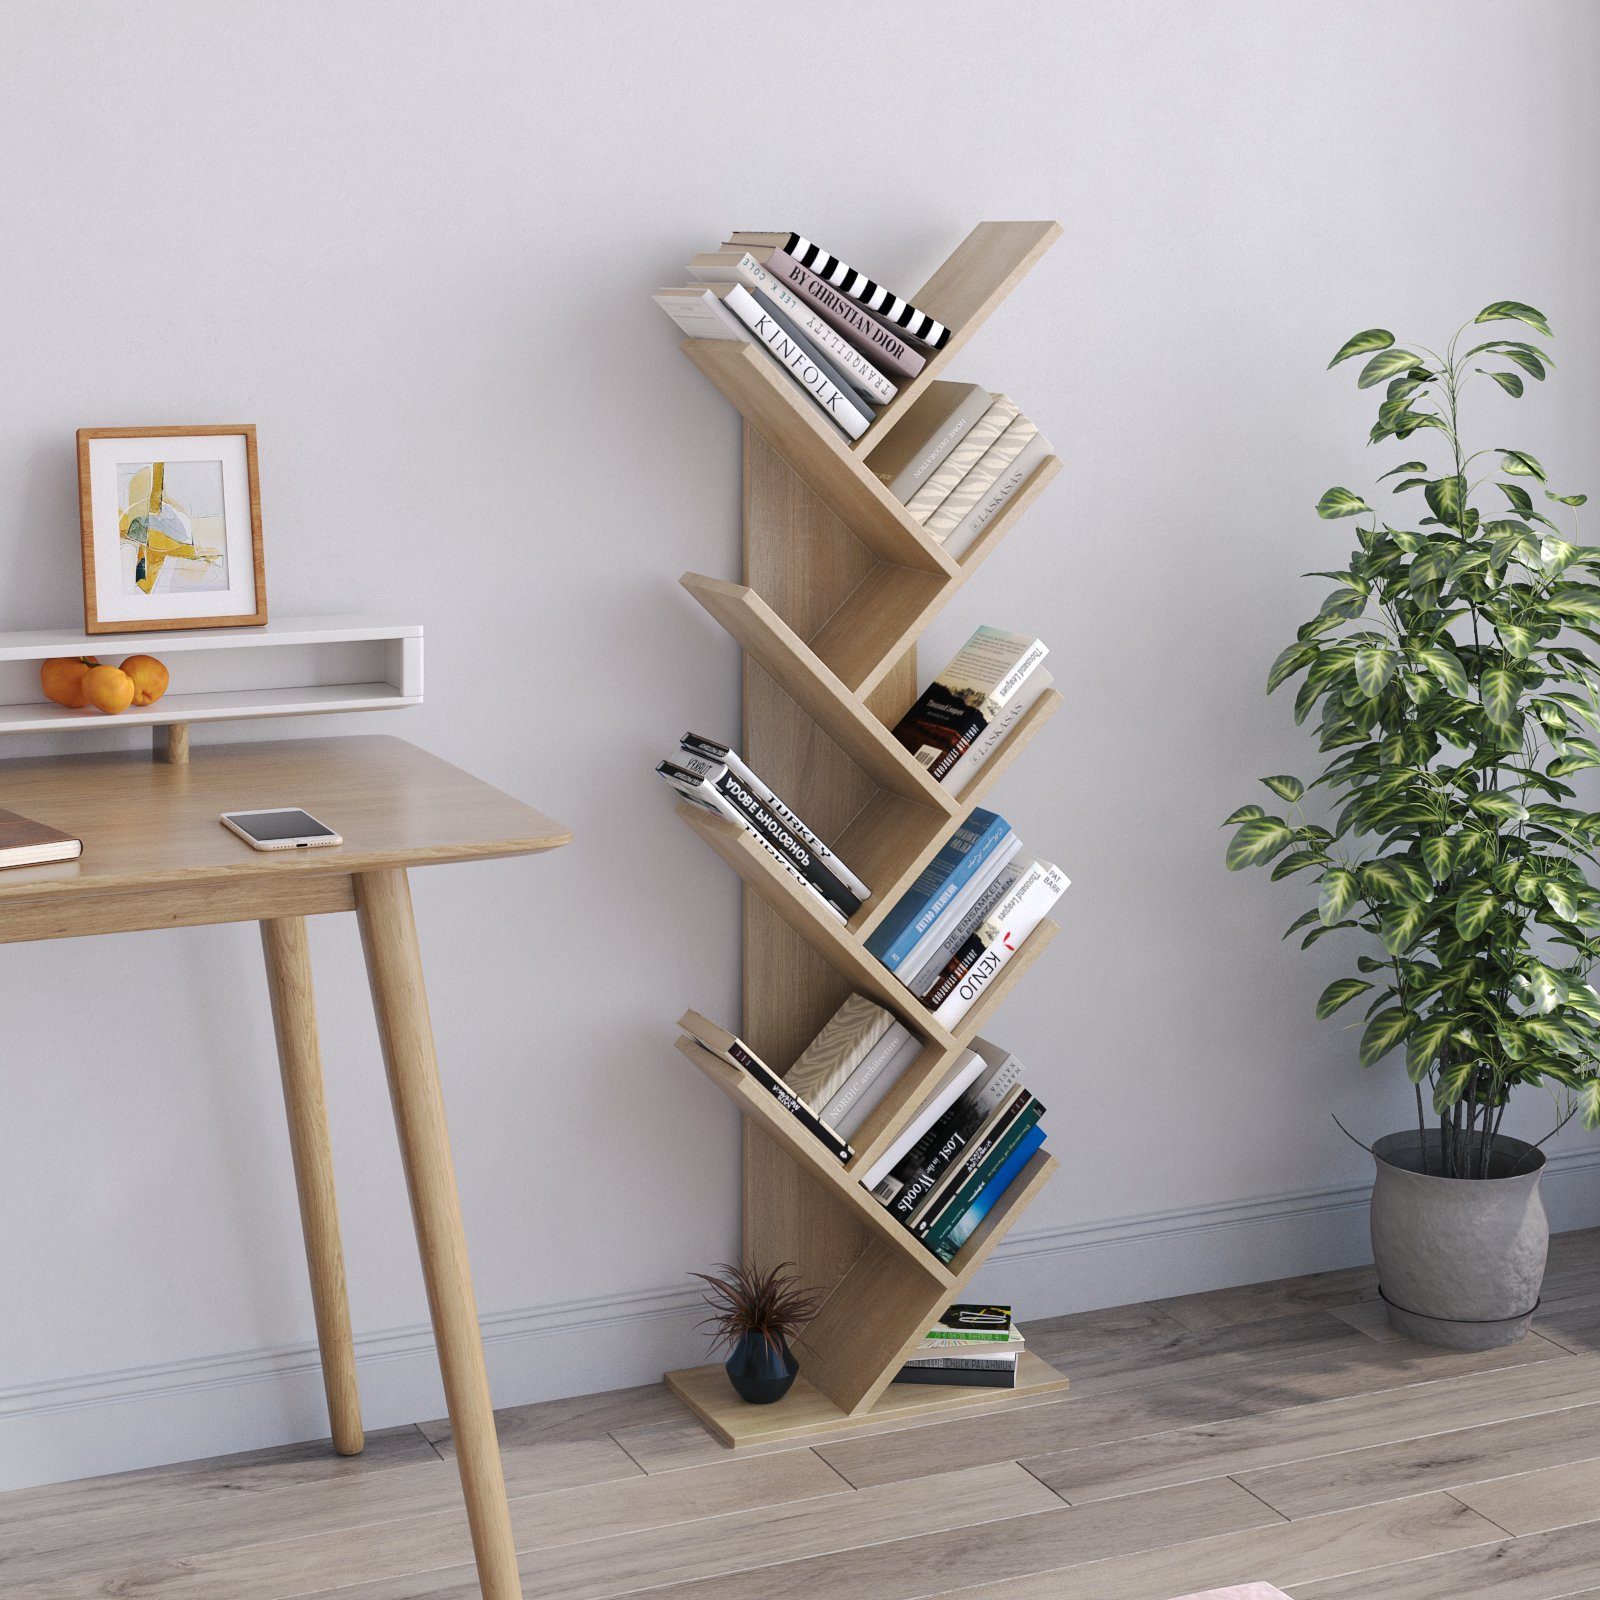 Braun Bücherschrank, aus Mondeer einfaches Design und exquisites Bücherregal Holz Baumform lagiges, 9 Platzsparen in Würfelregal